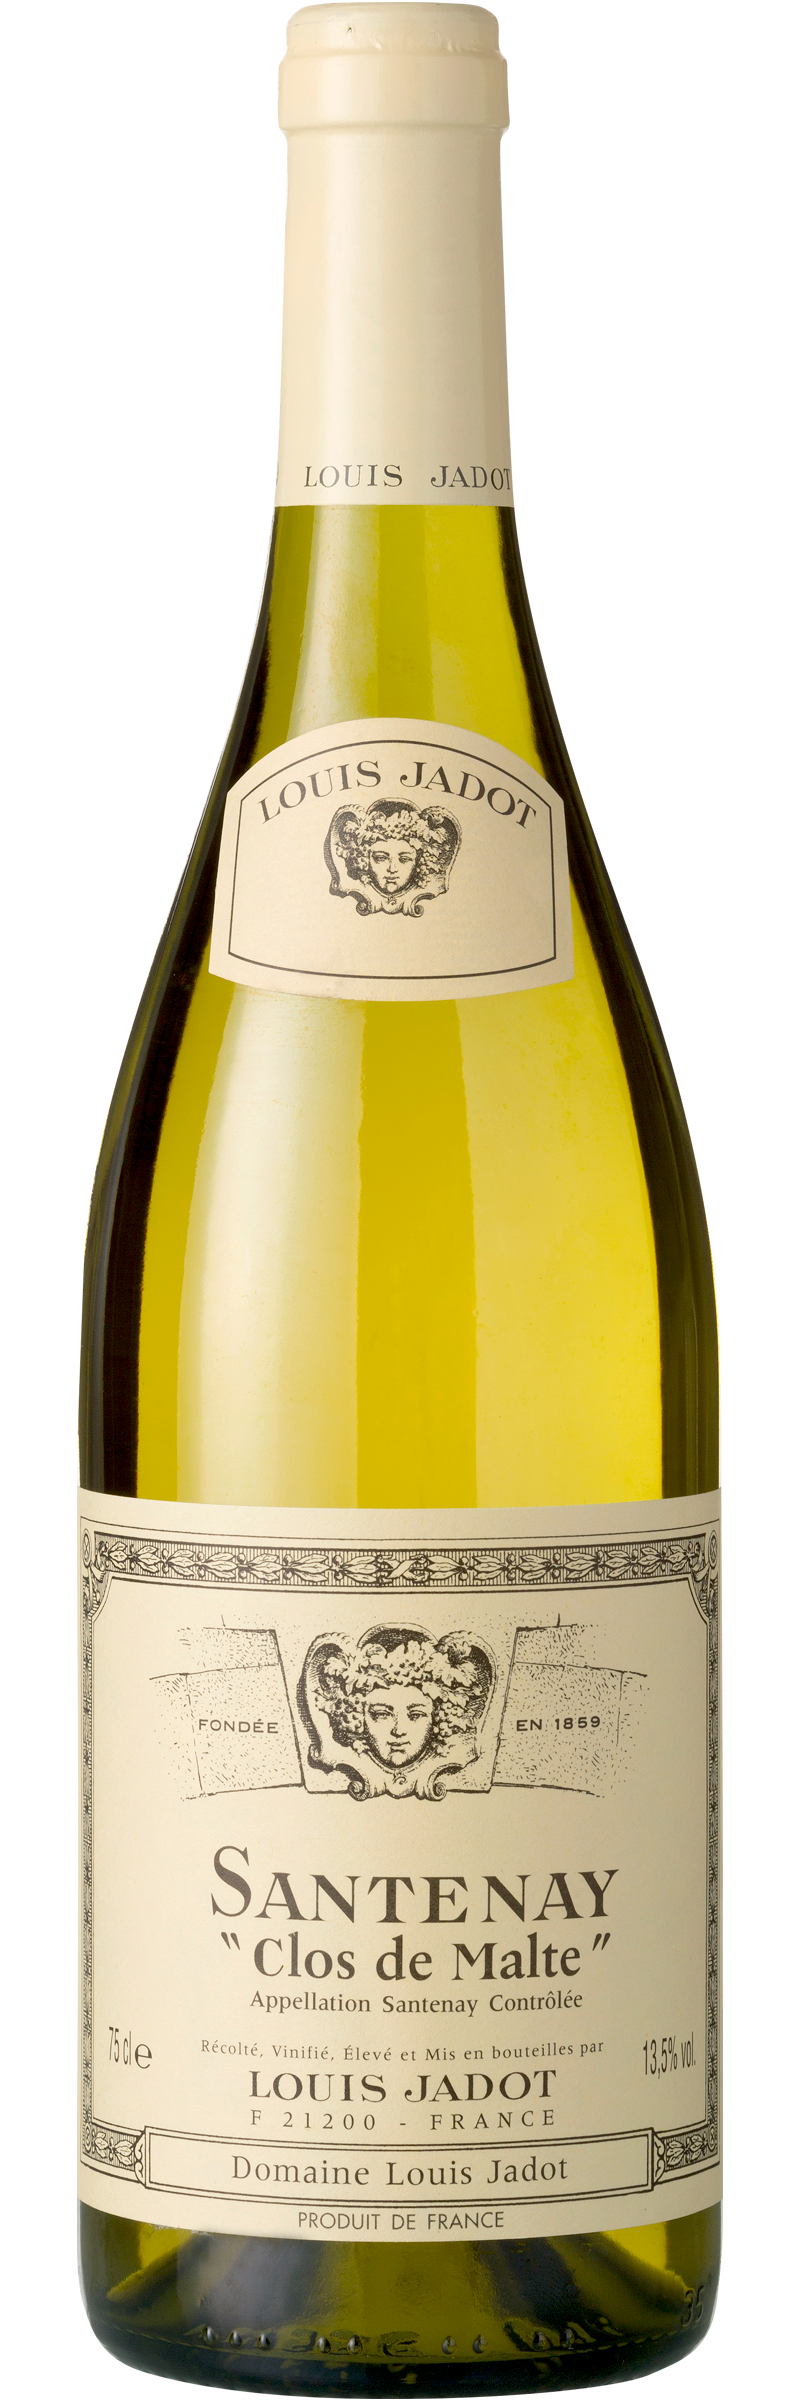 Bottle of Louis Jadot Santenay Clos de Malte Blanc from search results